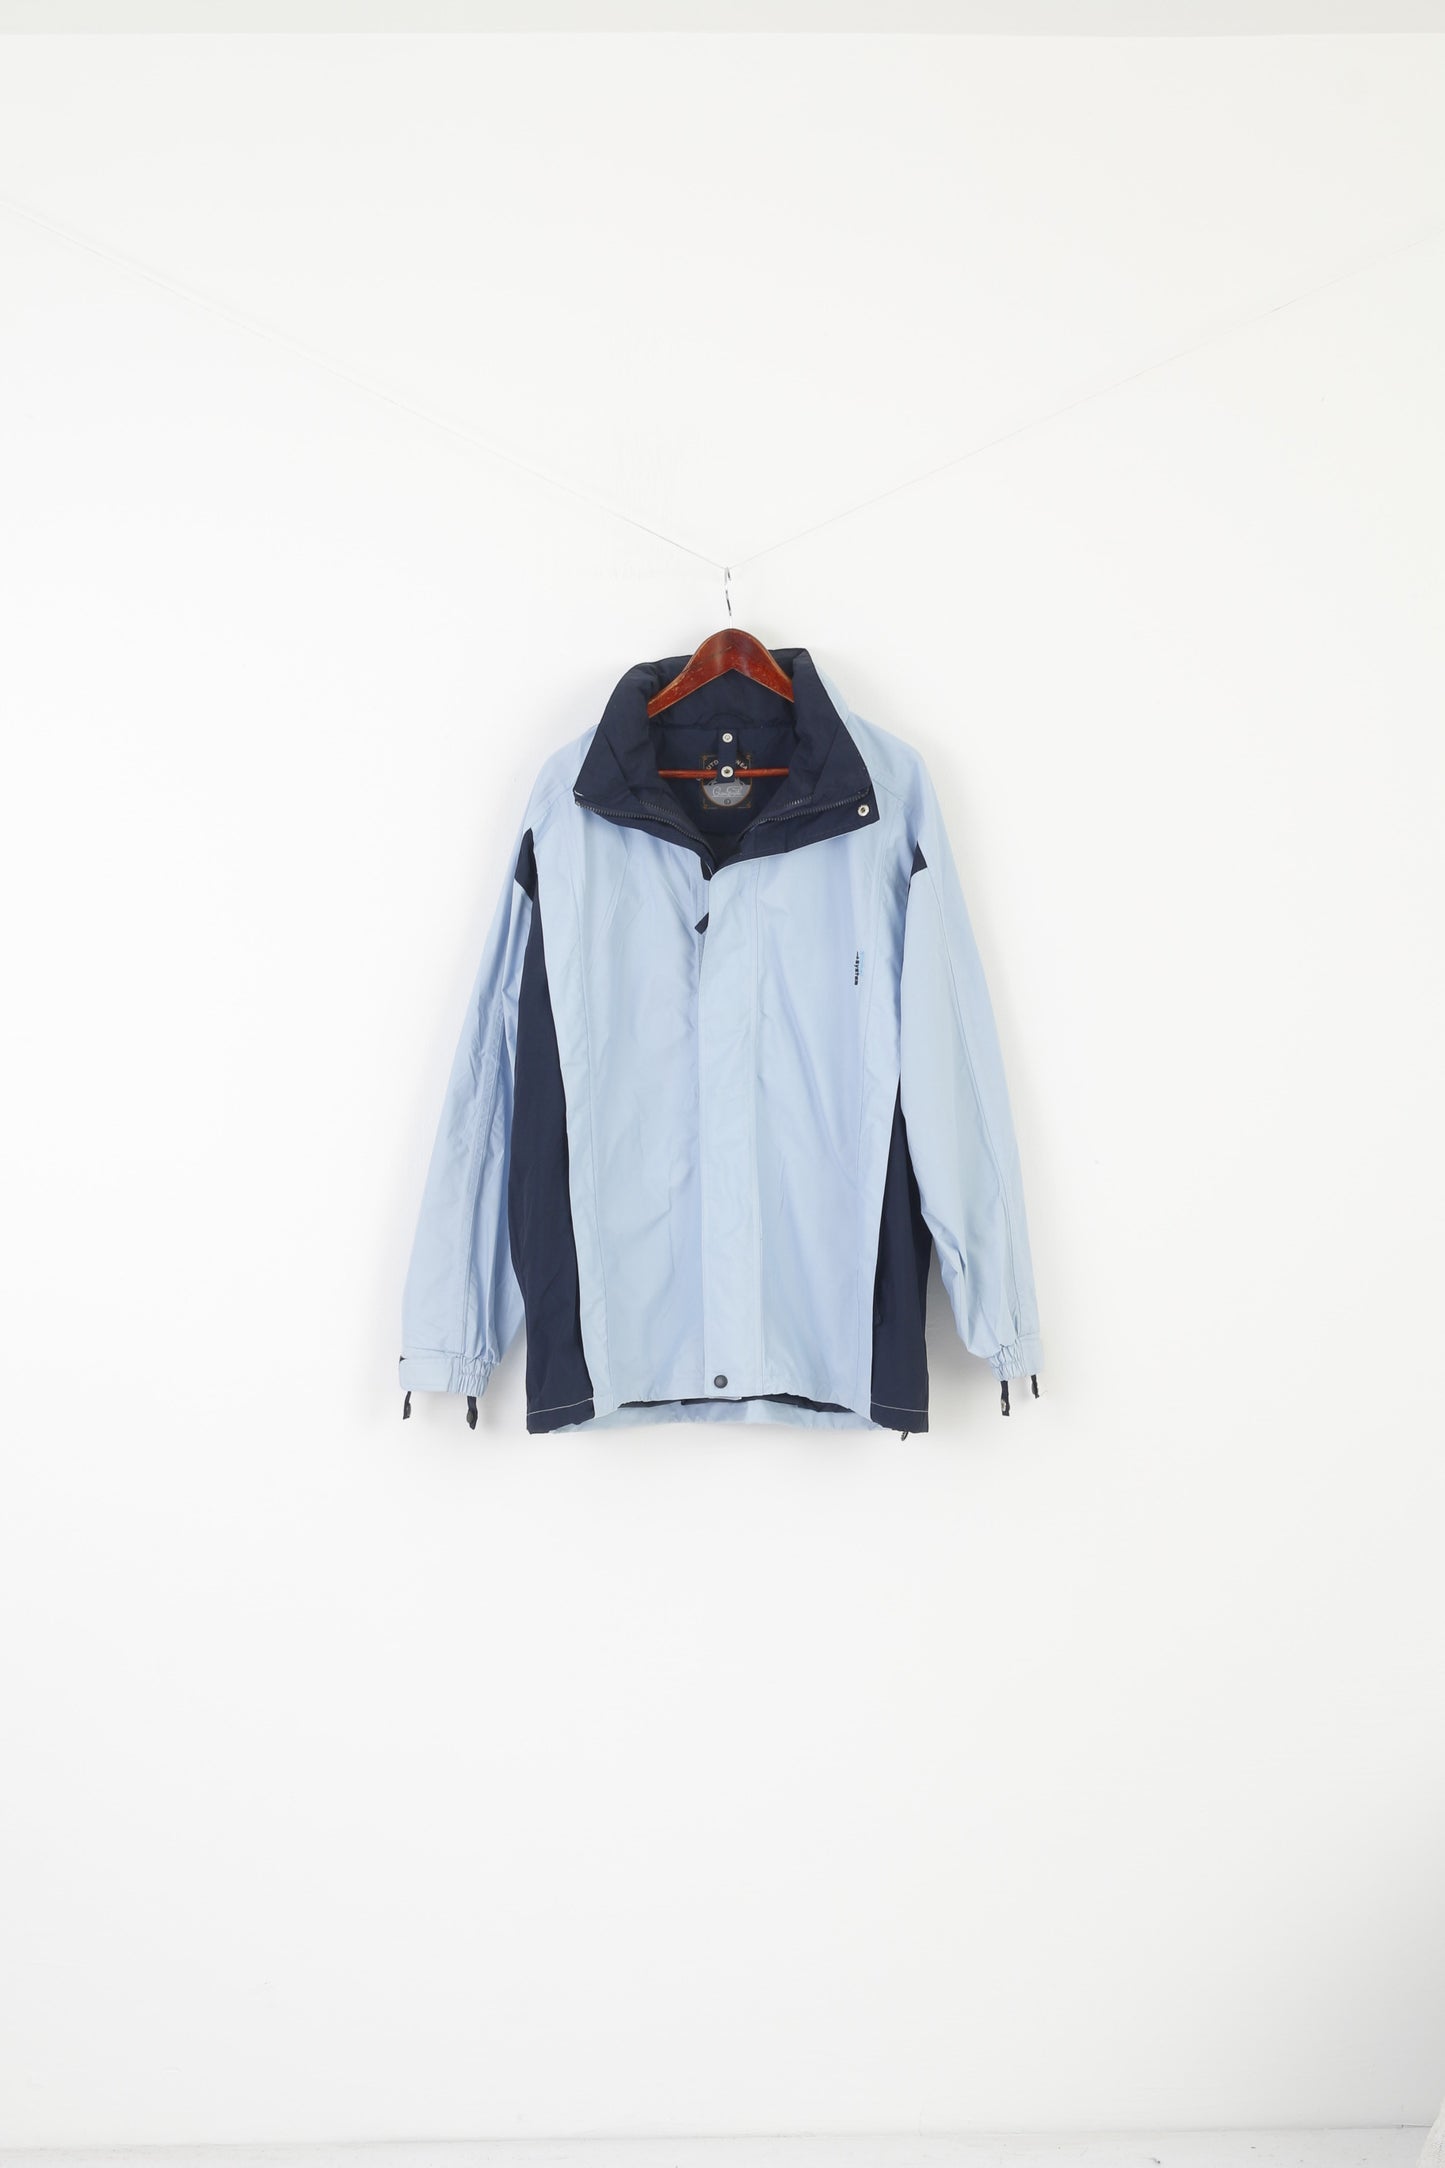 Gioni Feroti Outdoor wear Men L Jacket Blue Vintage Global System Hidden hood